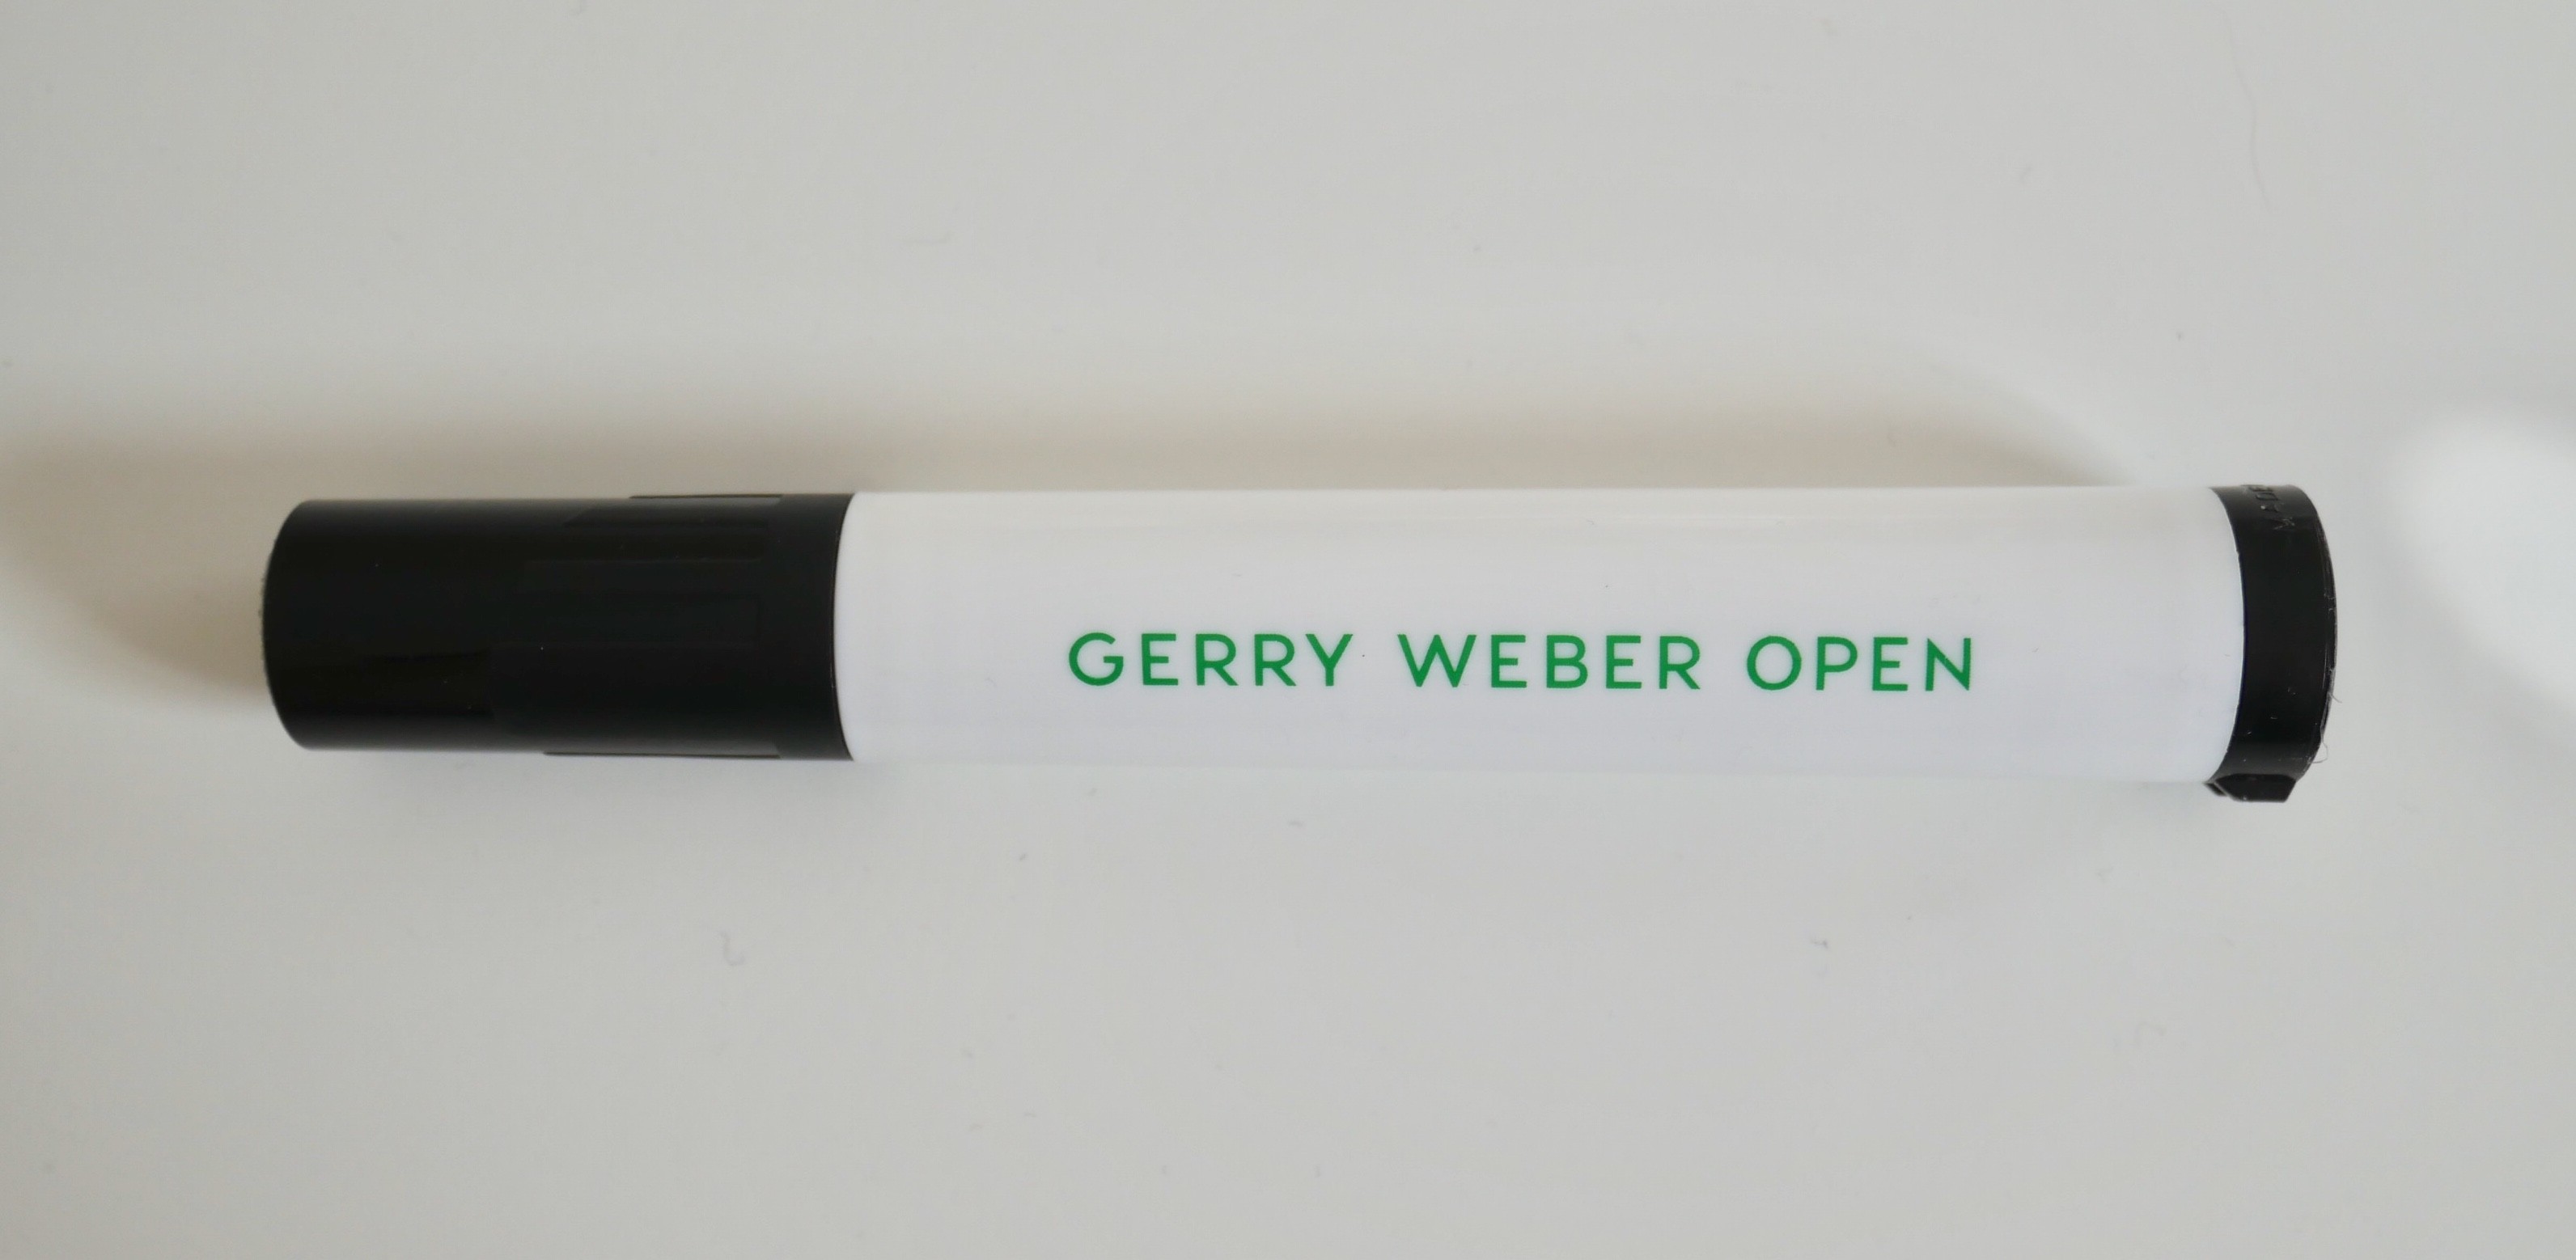 Filzmarker "Gerry Weber Open" (Museum Haller ZeitRäume CC BY-NC-SA)